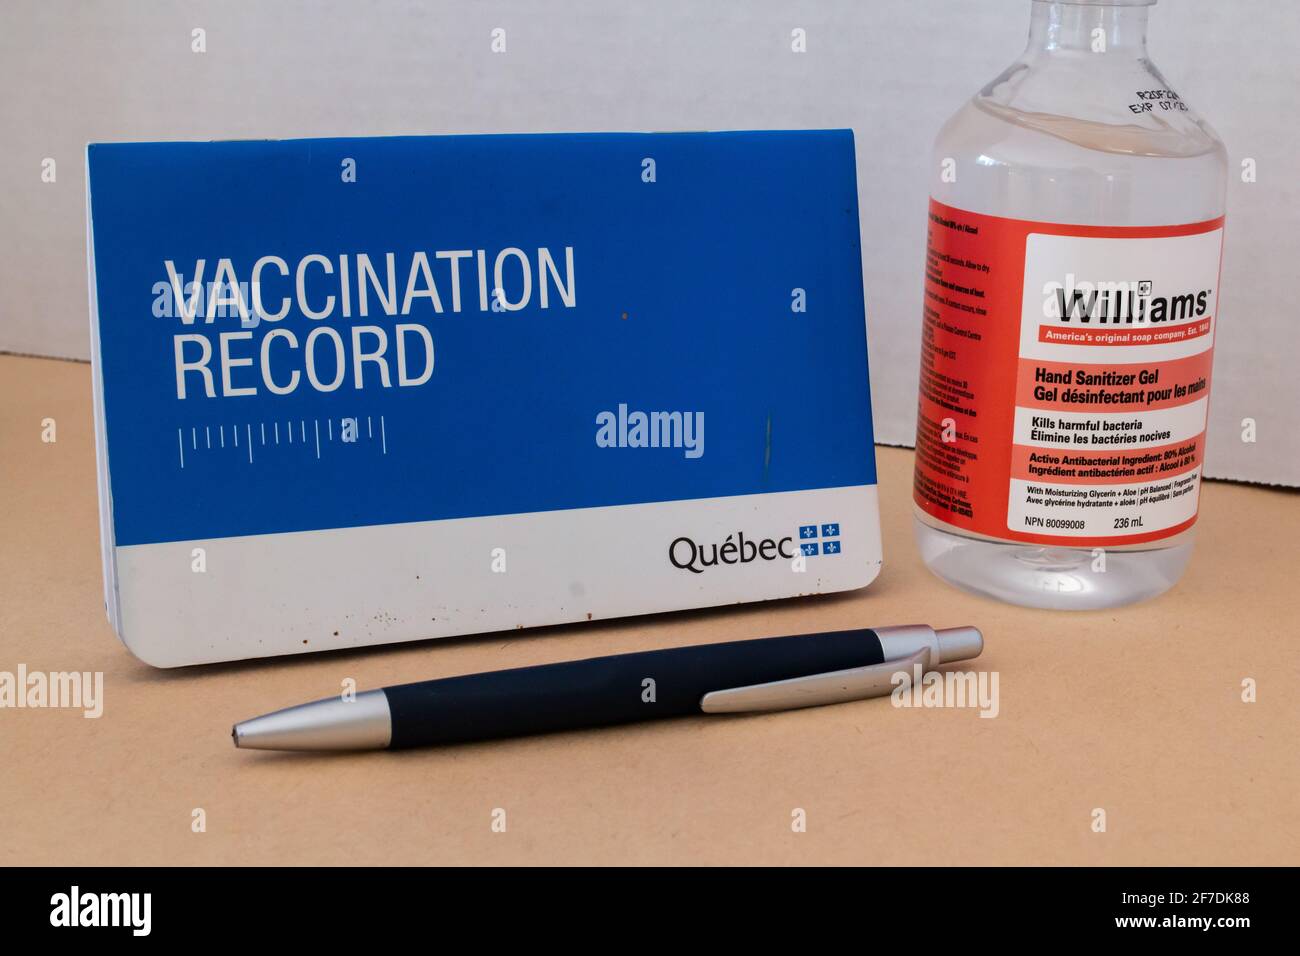 Toronto, Ontario, Canada - 2 febbraio 2021: Un libretto di registrazione della vaccinazione del Quebec accanto ad una bottiglia di disinfettante per le mani e ad una penna. Foto Stock